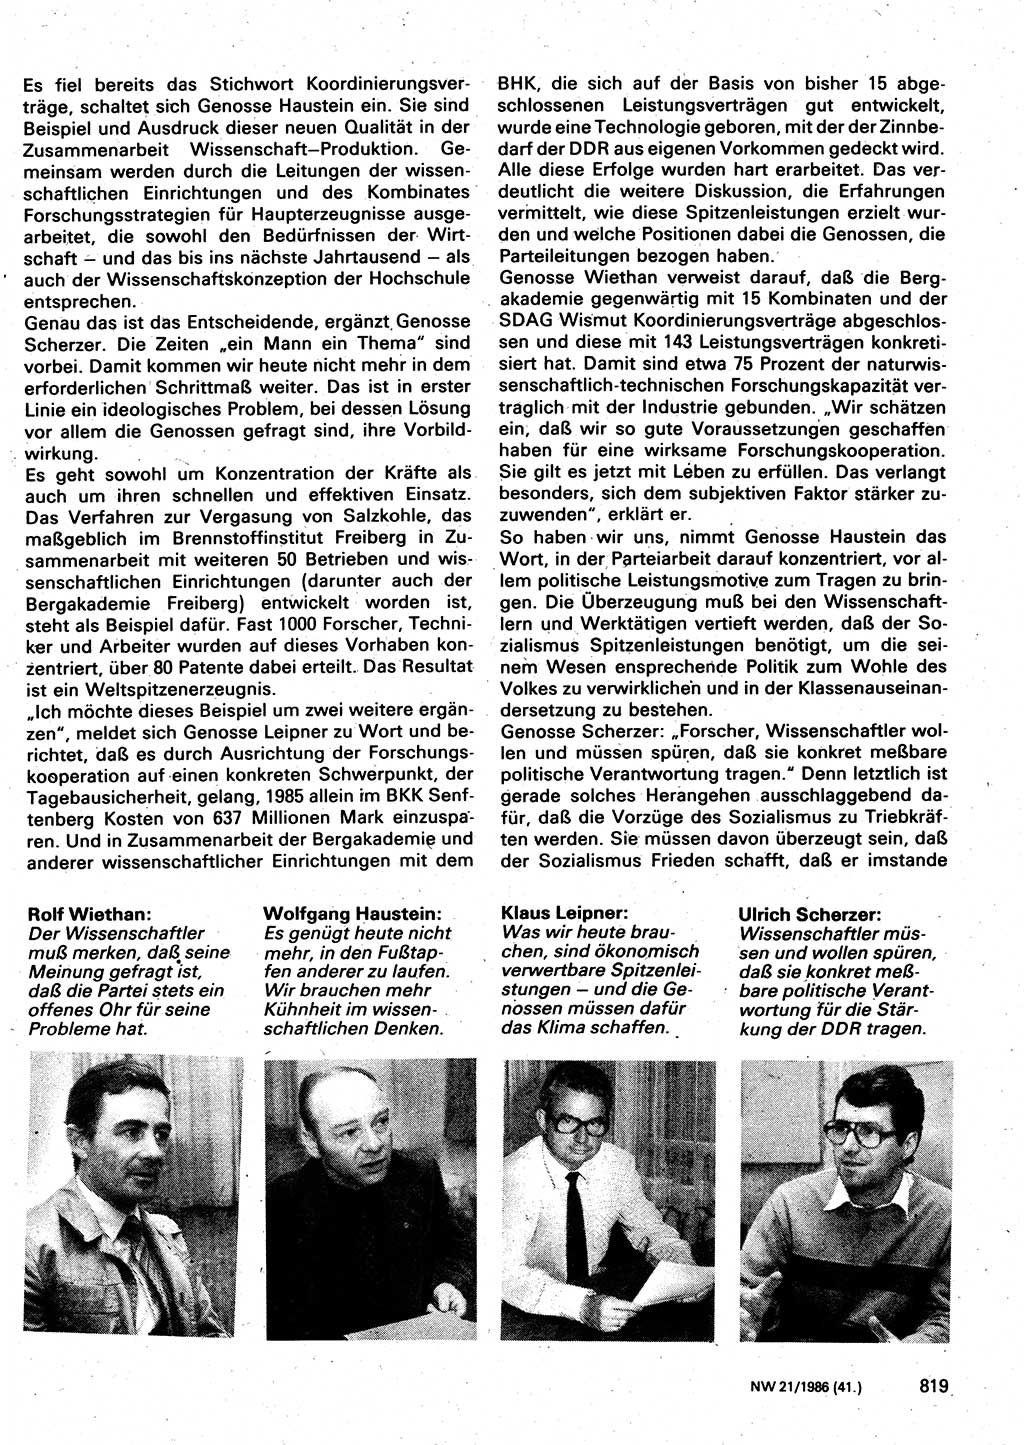 Neuer Weg (NW), Organ des Zentralkomitees (ZK) der SED (Sozialistische Einheitspartei Deutschlands) für Fragen des Parteilebens, 41. Jahrgang [Deutsche Demokratische Republik (DDR)] 1986, Seite 819 (NW ZK SED DDR 1986, S. 819)